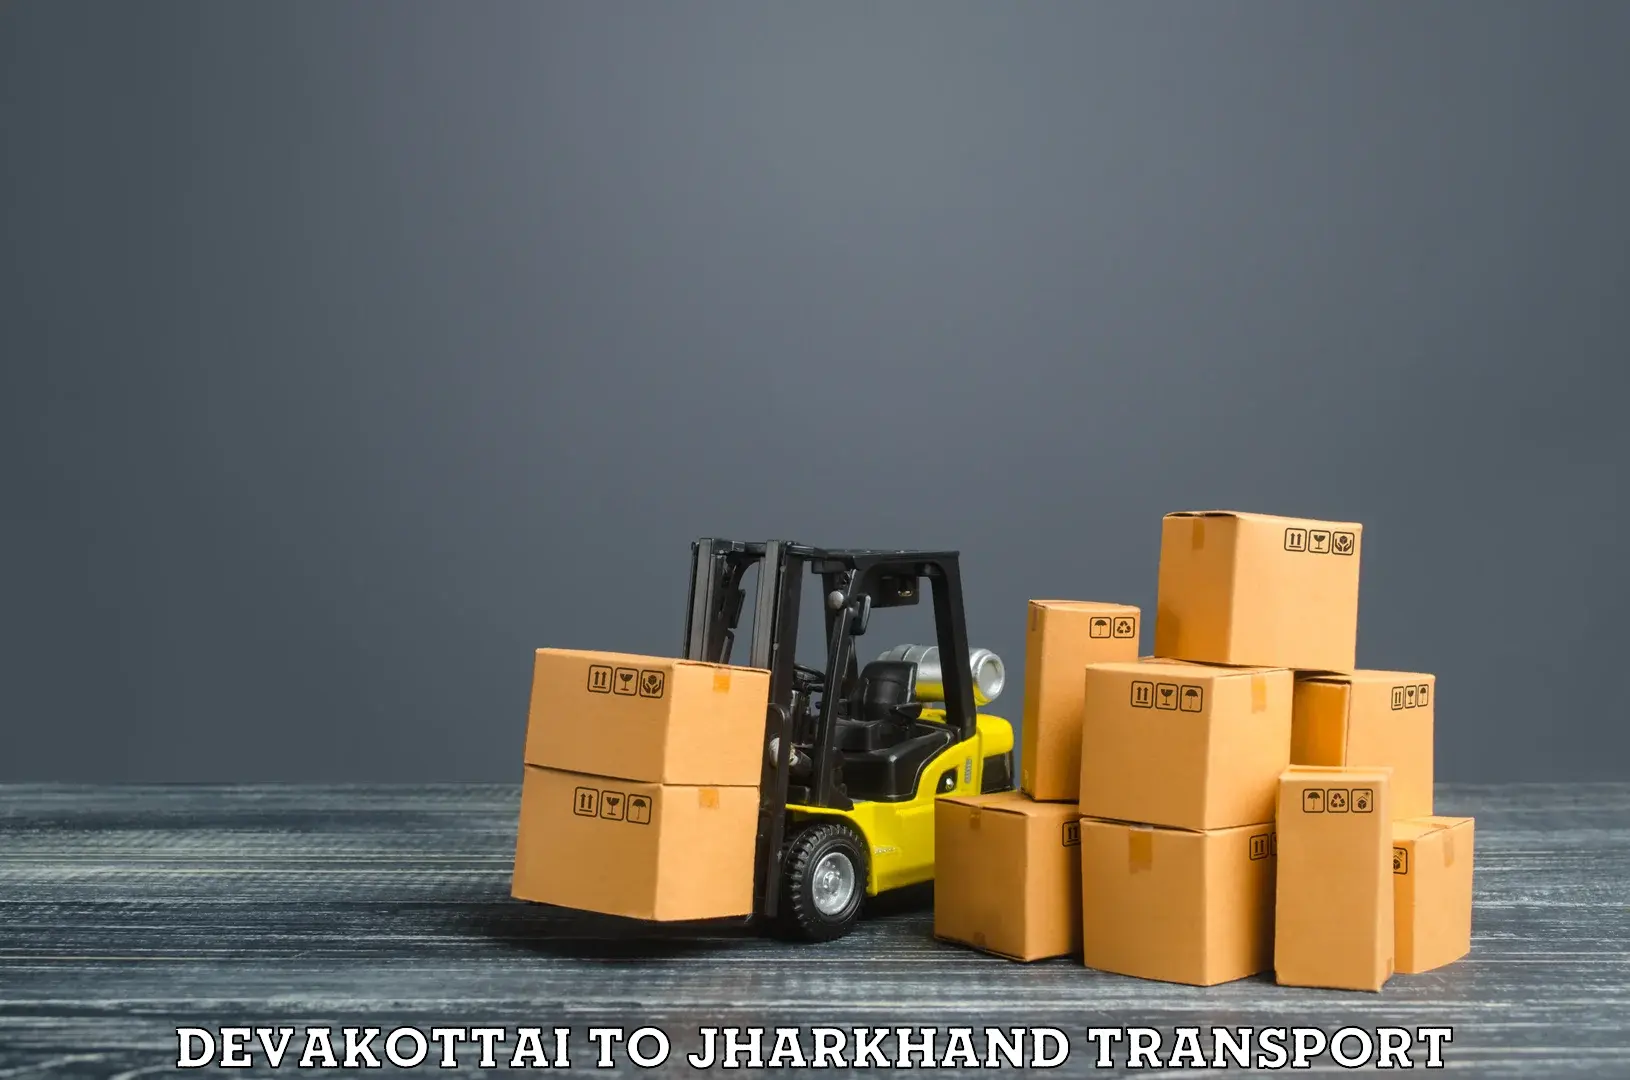 Goods delivery service Devakottai to Dhanbad